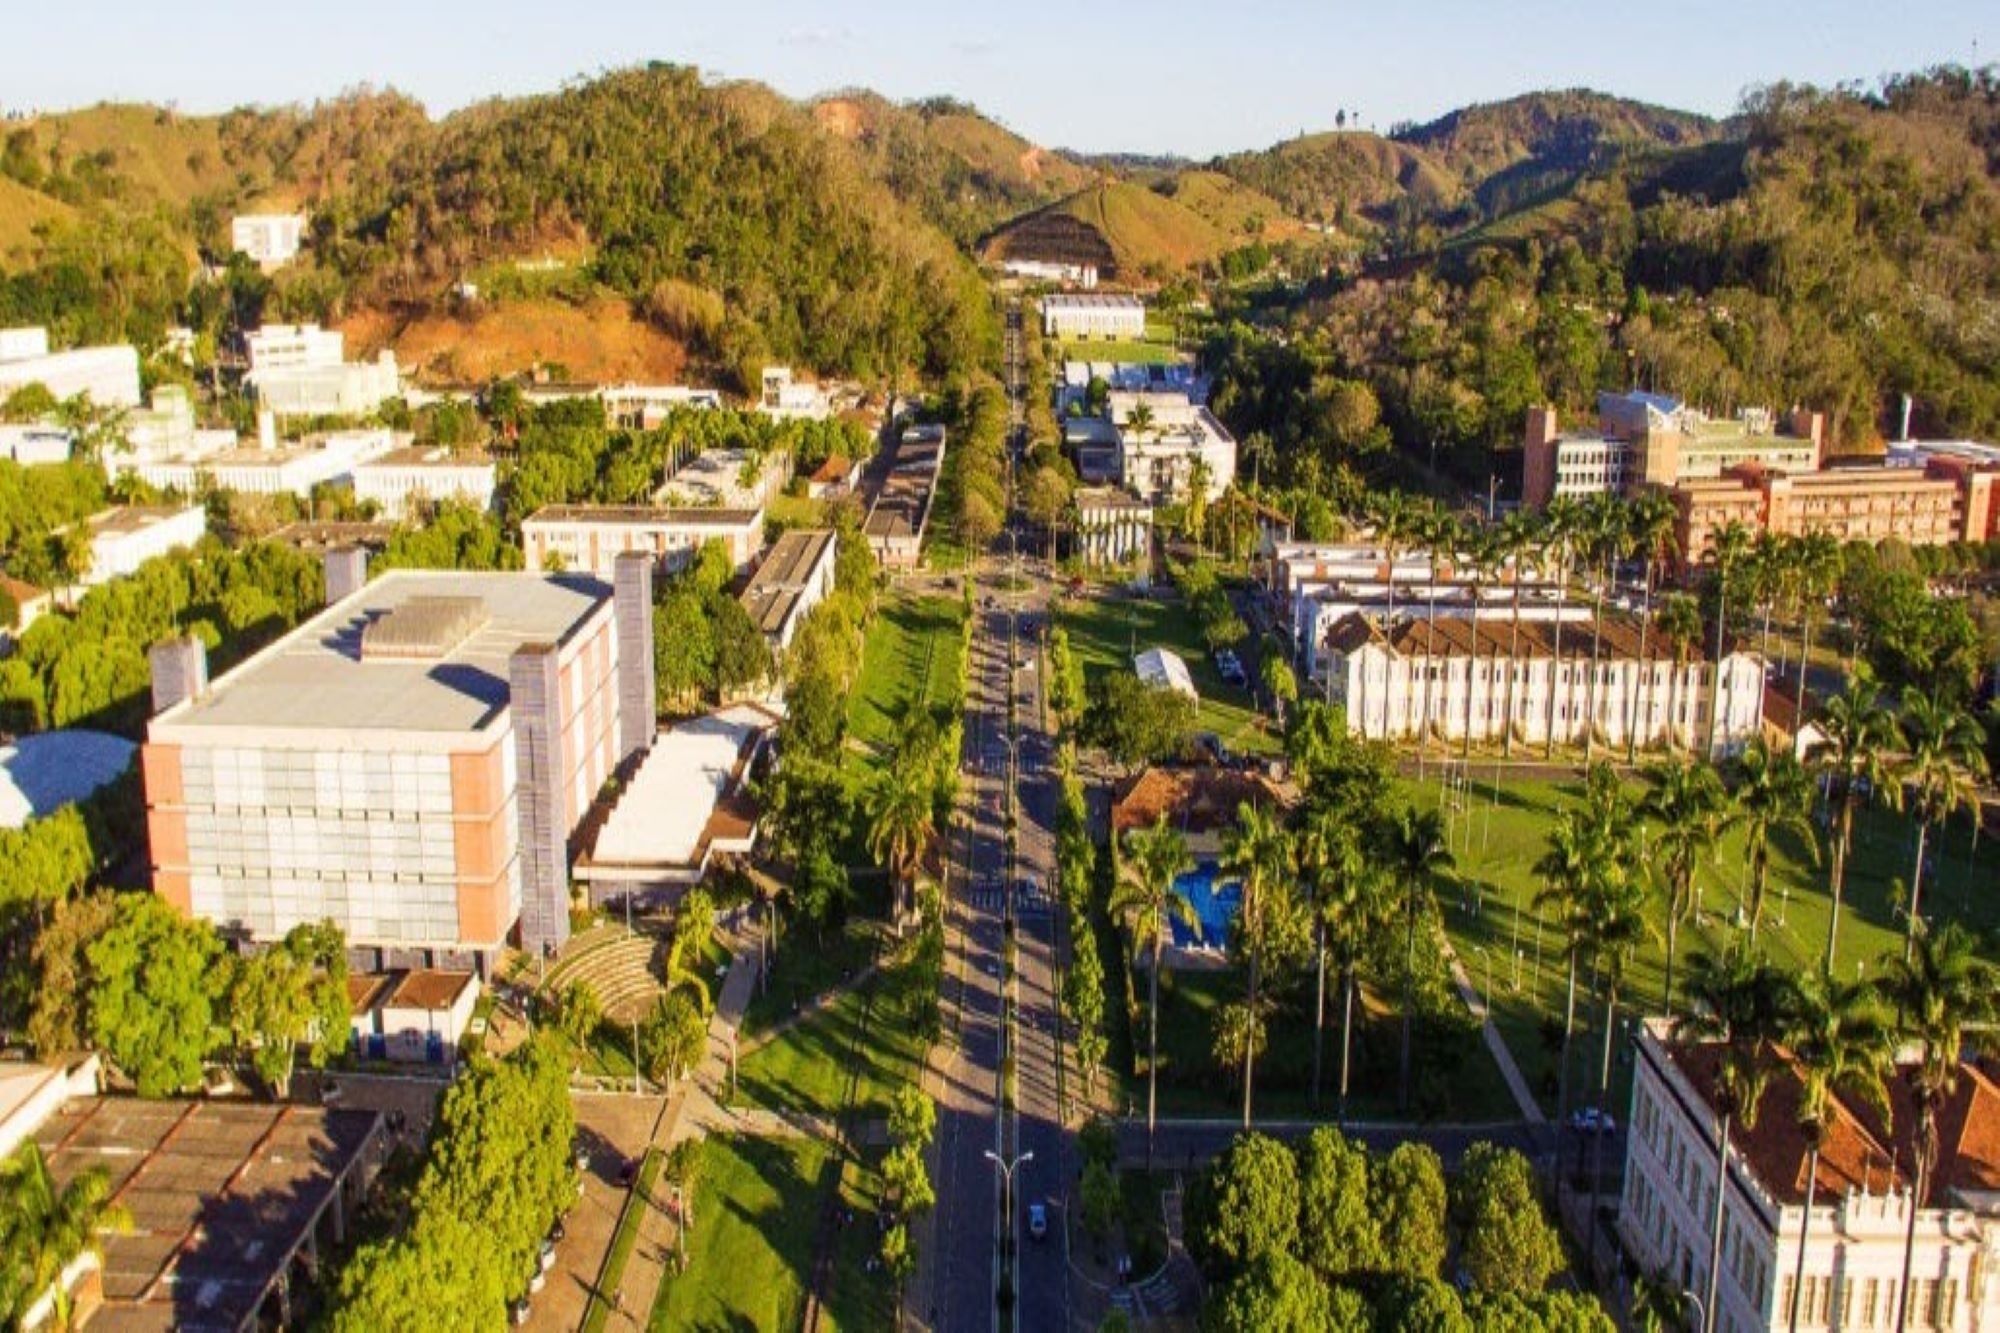 Universidade Federal de Viçosa se prepara para receber cerca de 17 mil estudantes. - Foto: Google